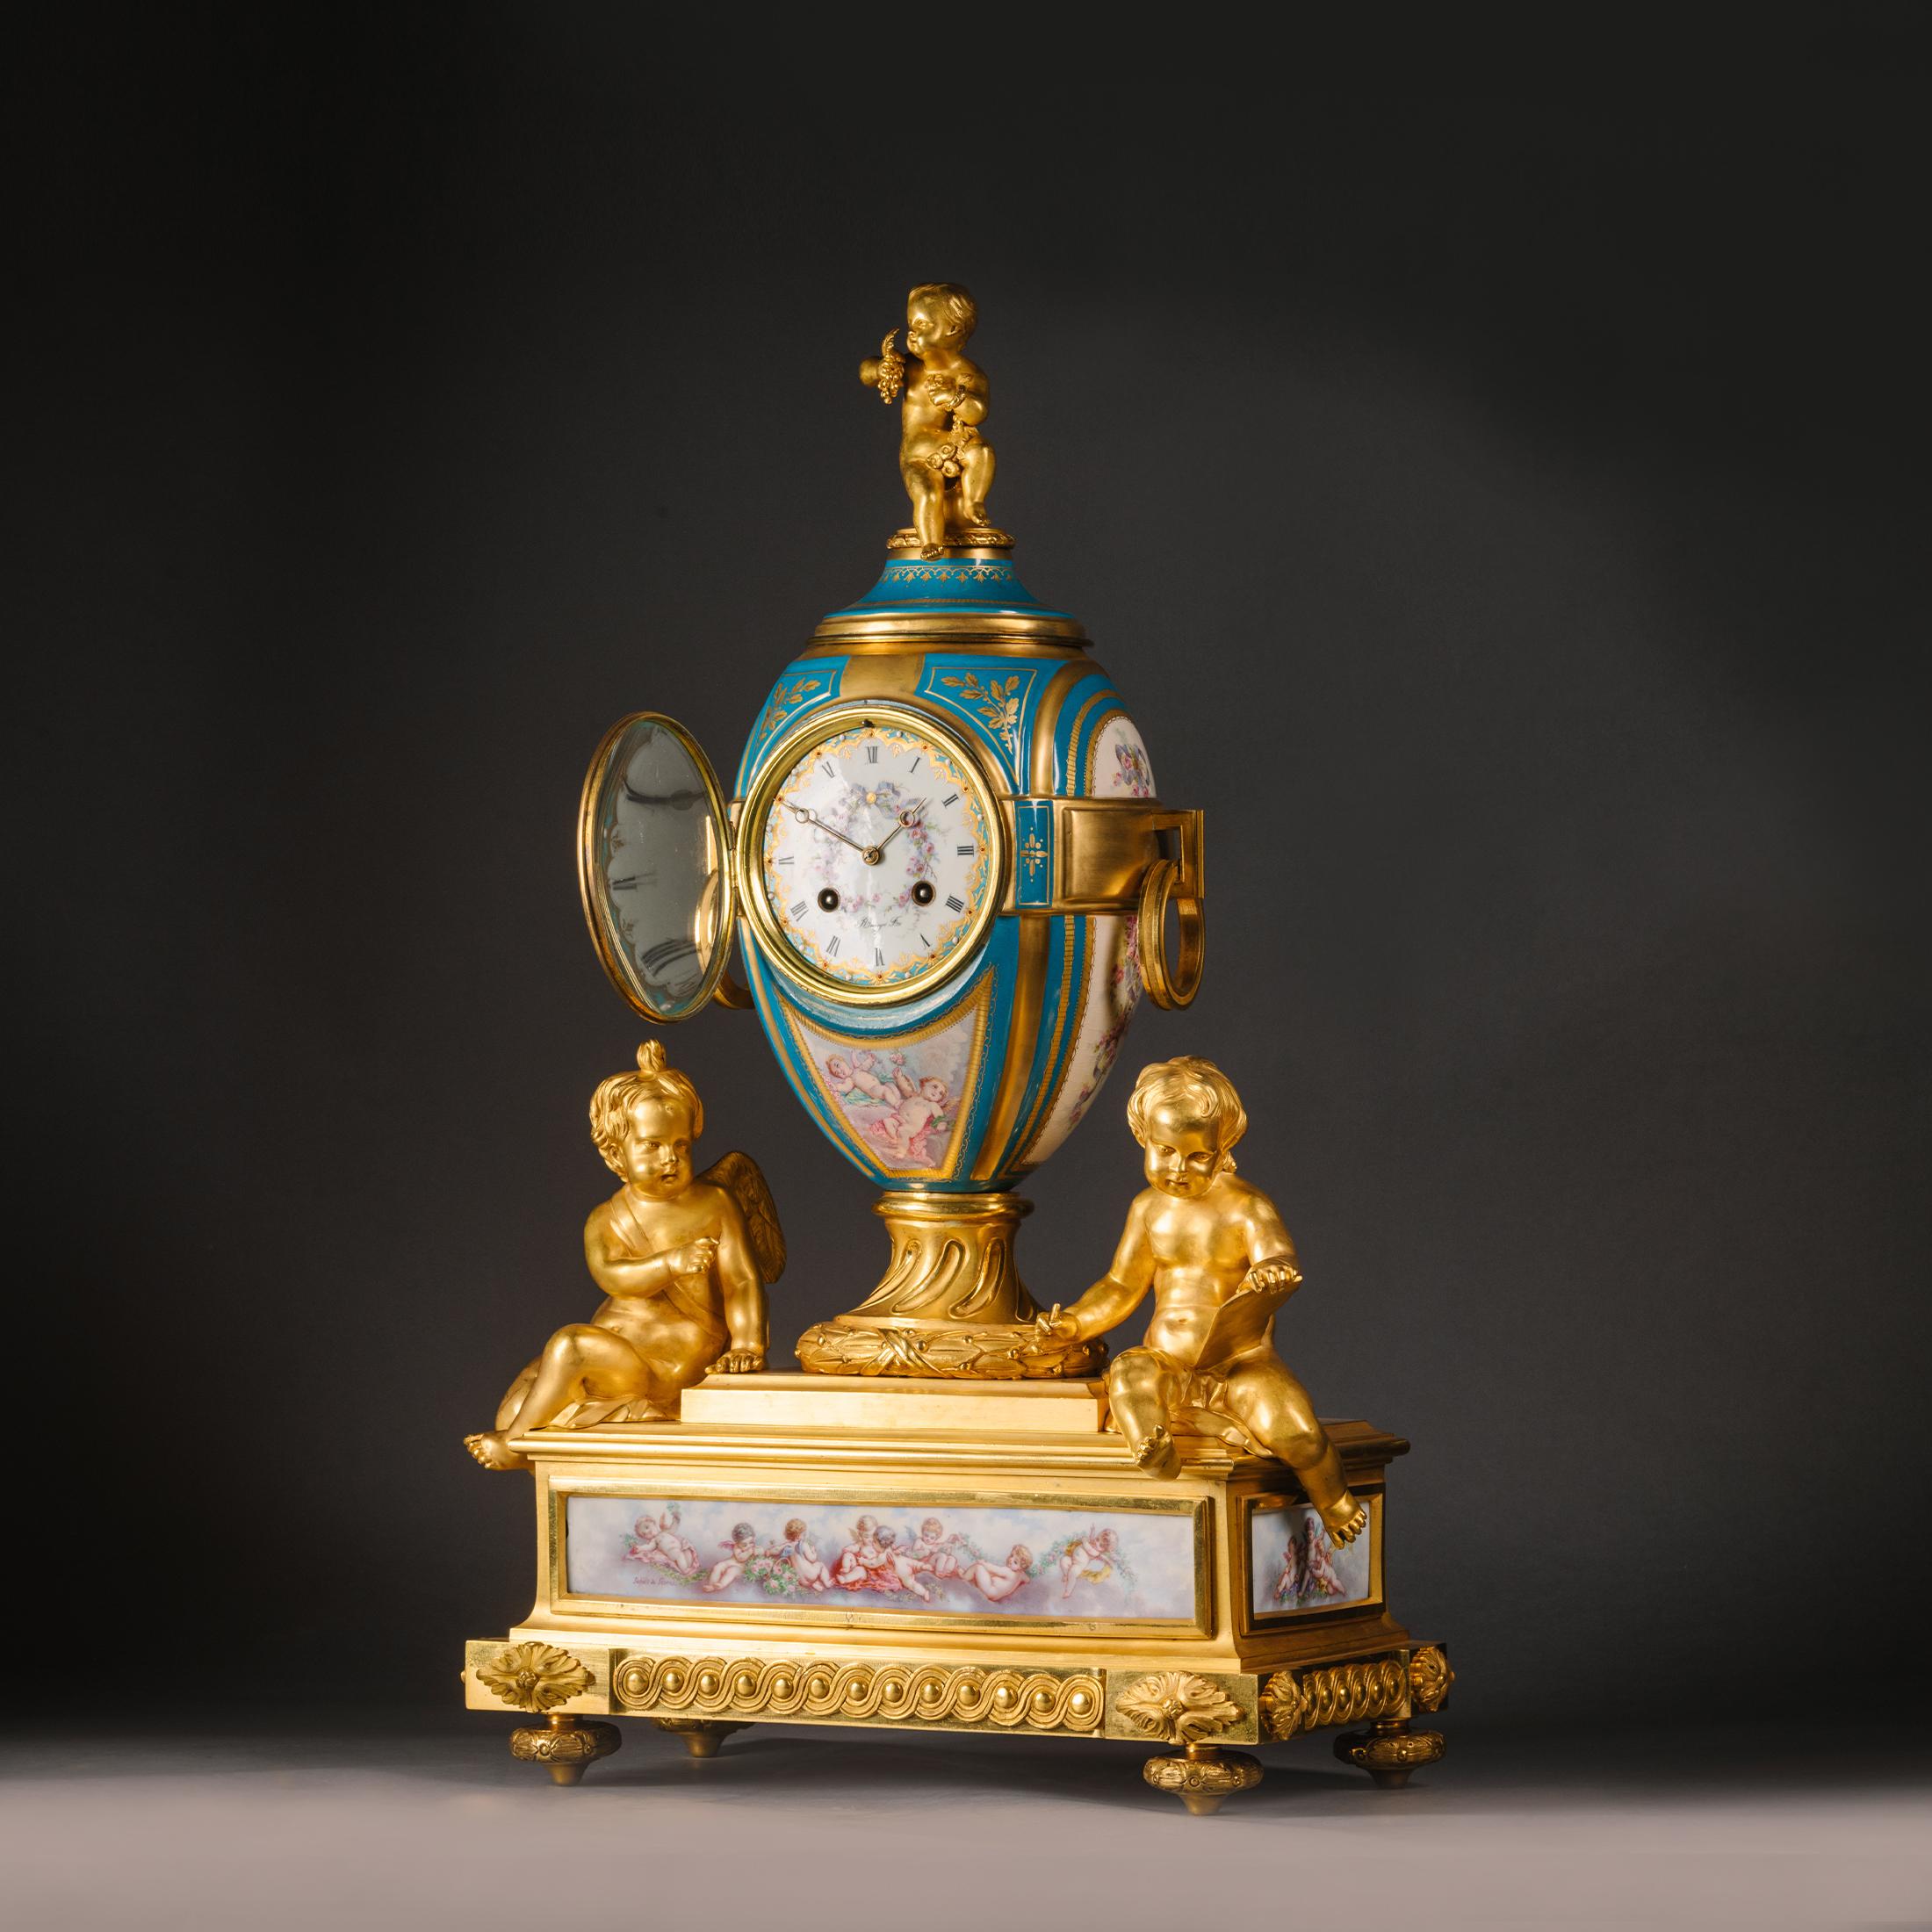 Kaminsimsuhr aus vergoldeter Bronze und Sèvres-Porzellan im Stil Ludwigs XVI. von Raingo Frères, Paris. Die Porzellantafeln sind von Léonard Abel Schilt signiert. 

Das Uhrwerk trägt den Stempel 